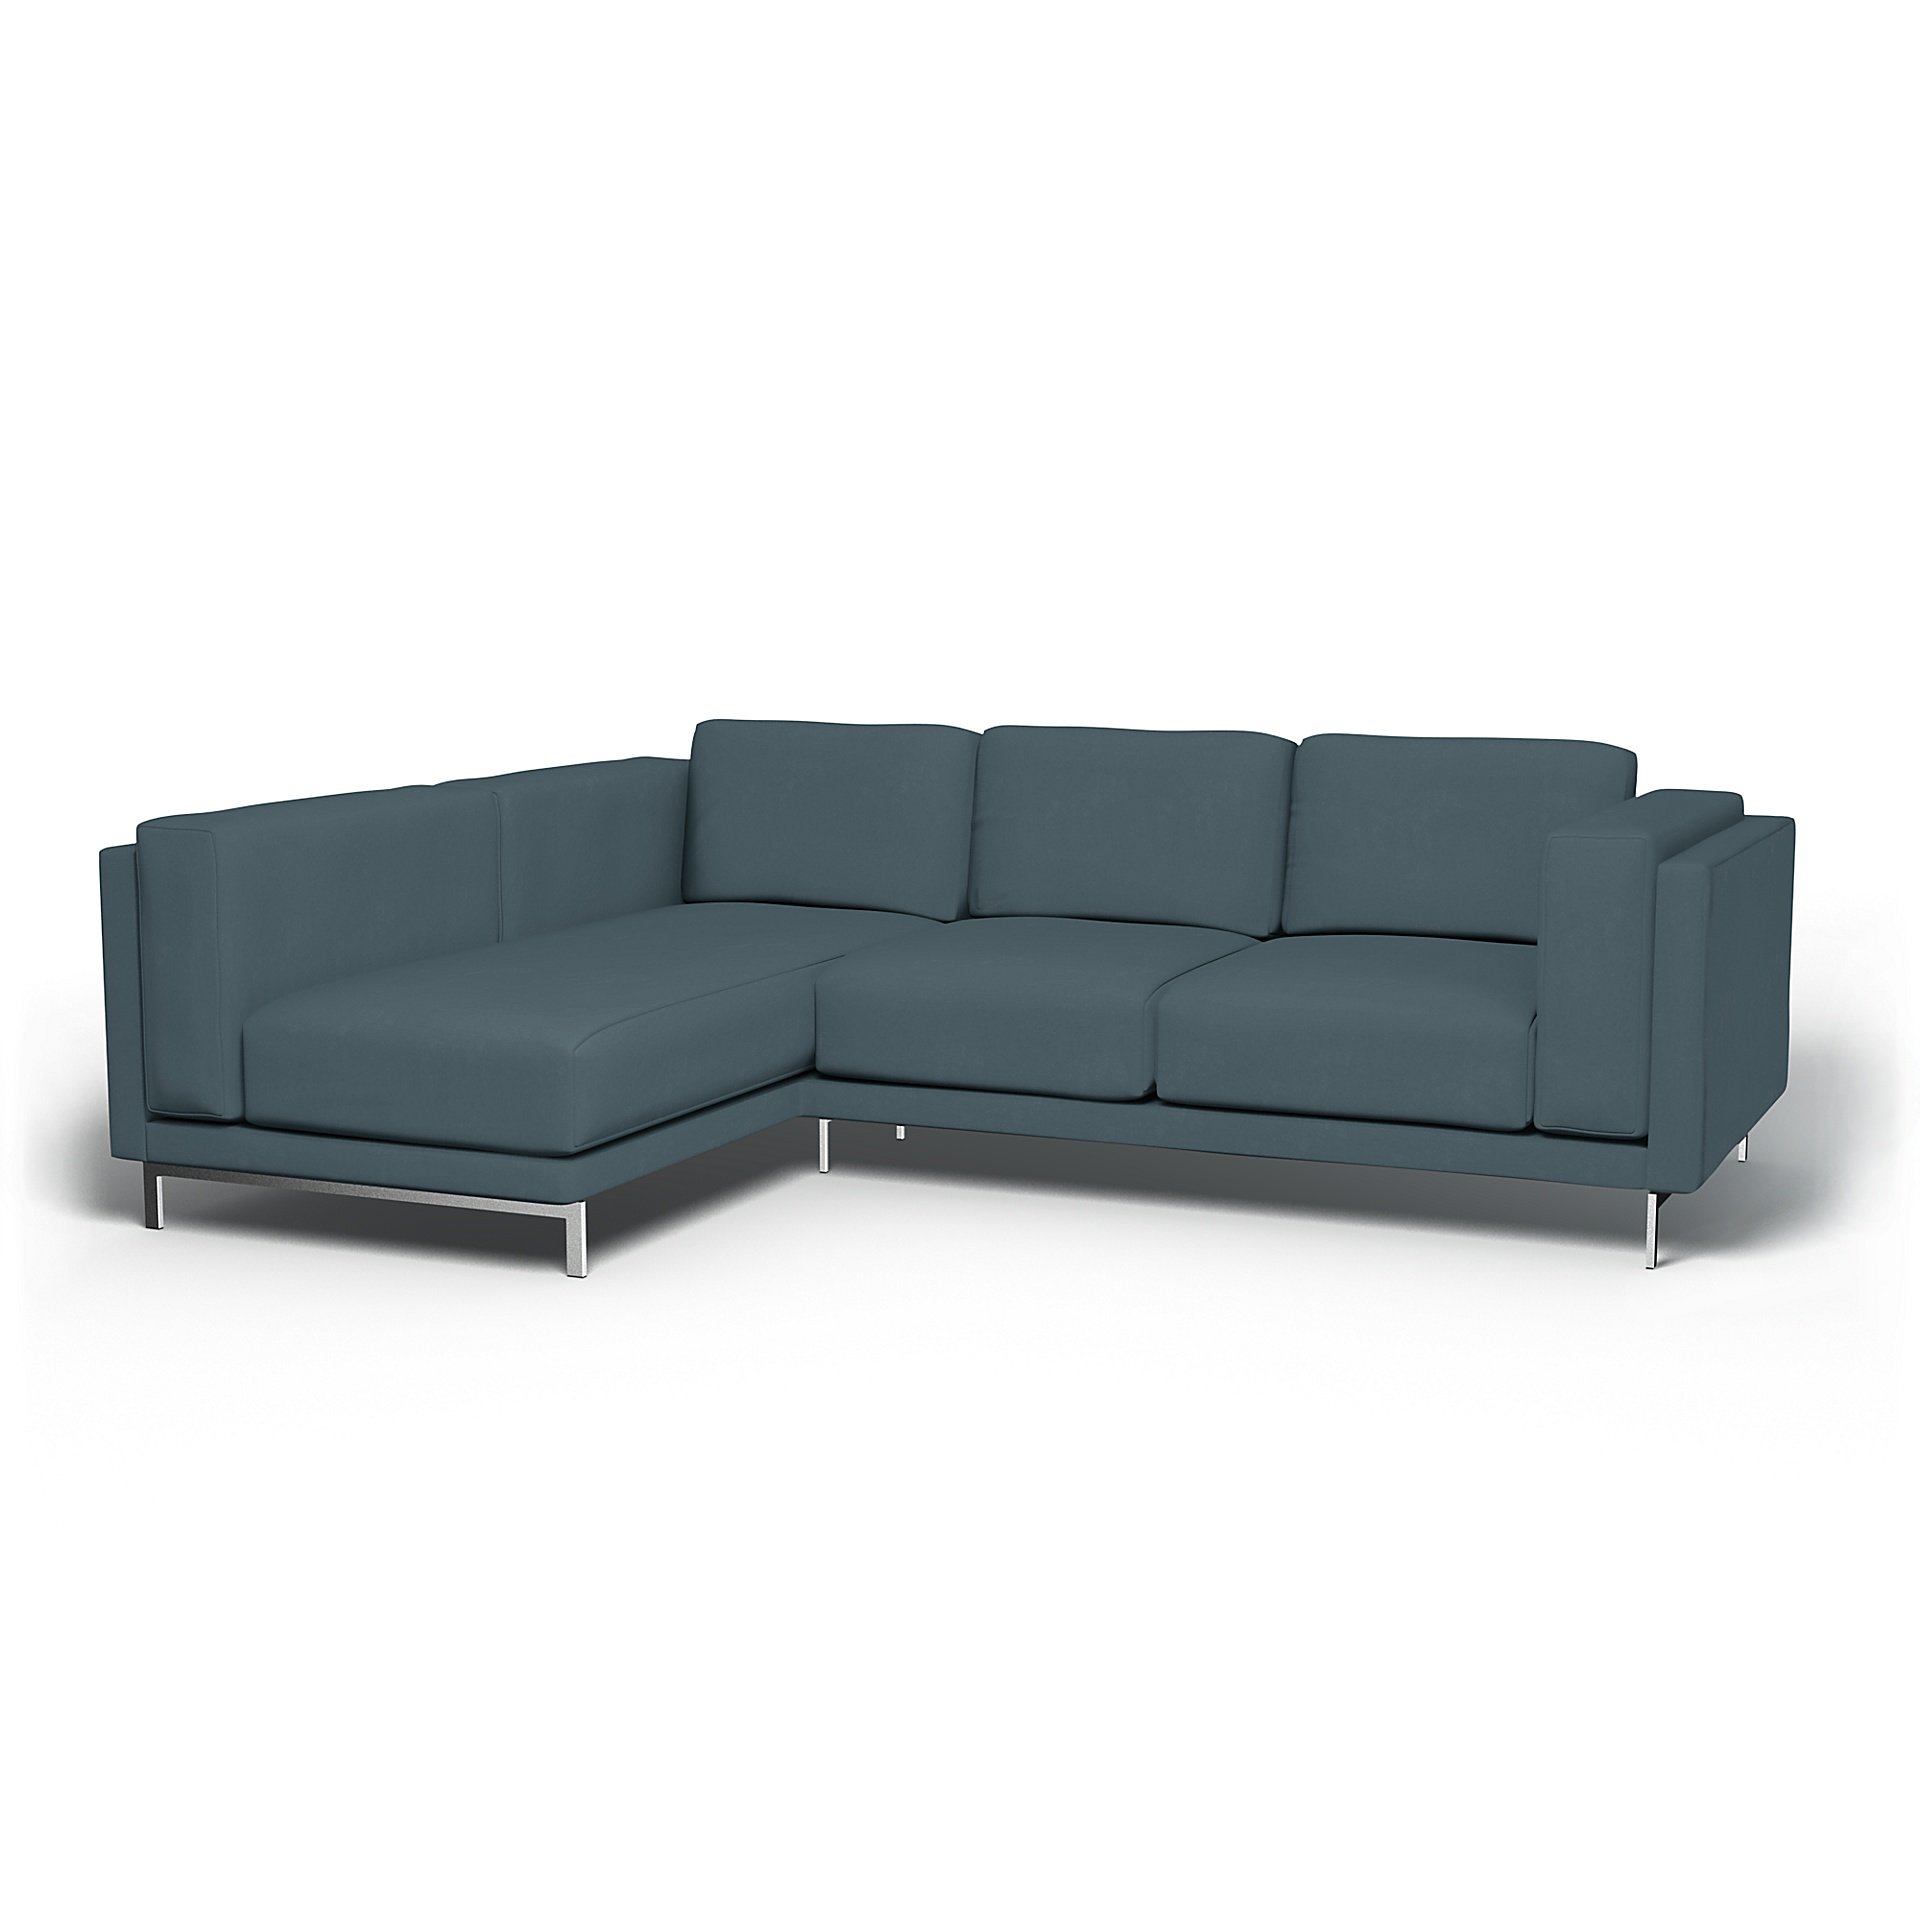 IKEA - Nockeby 3 Seater Sofa with Left Chaise Cover, Duck Egg, Velvet - Bemz